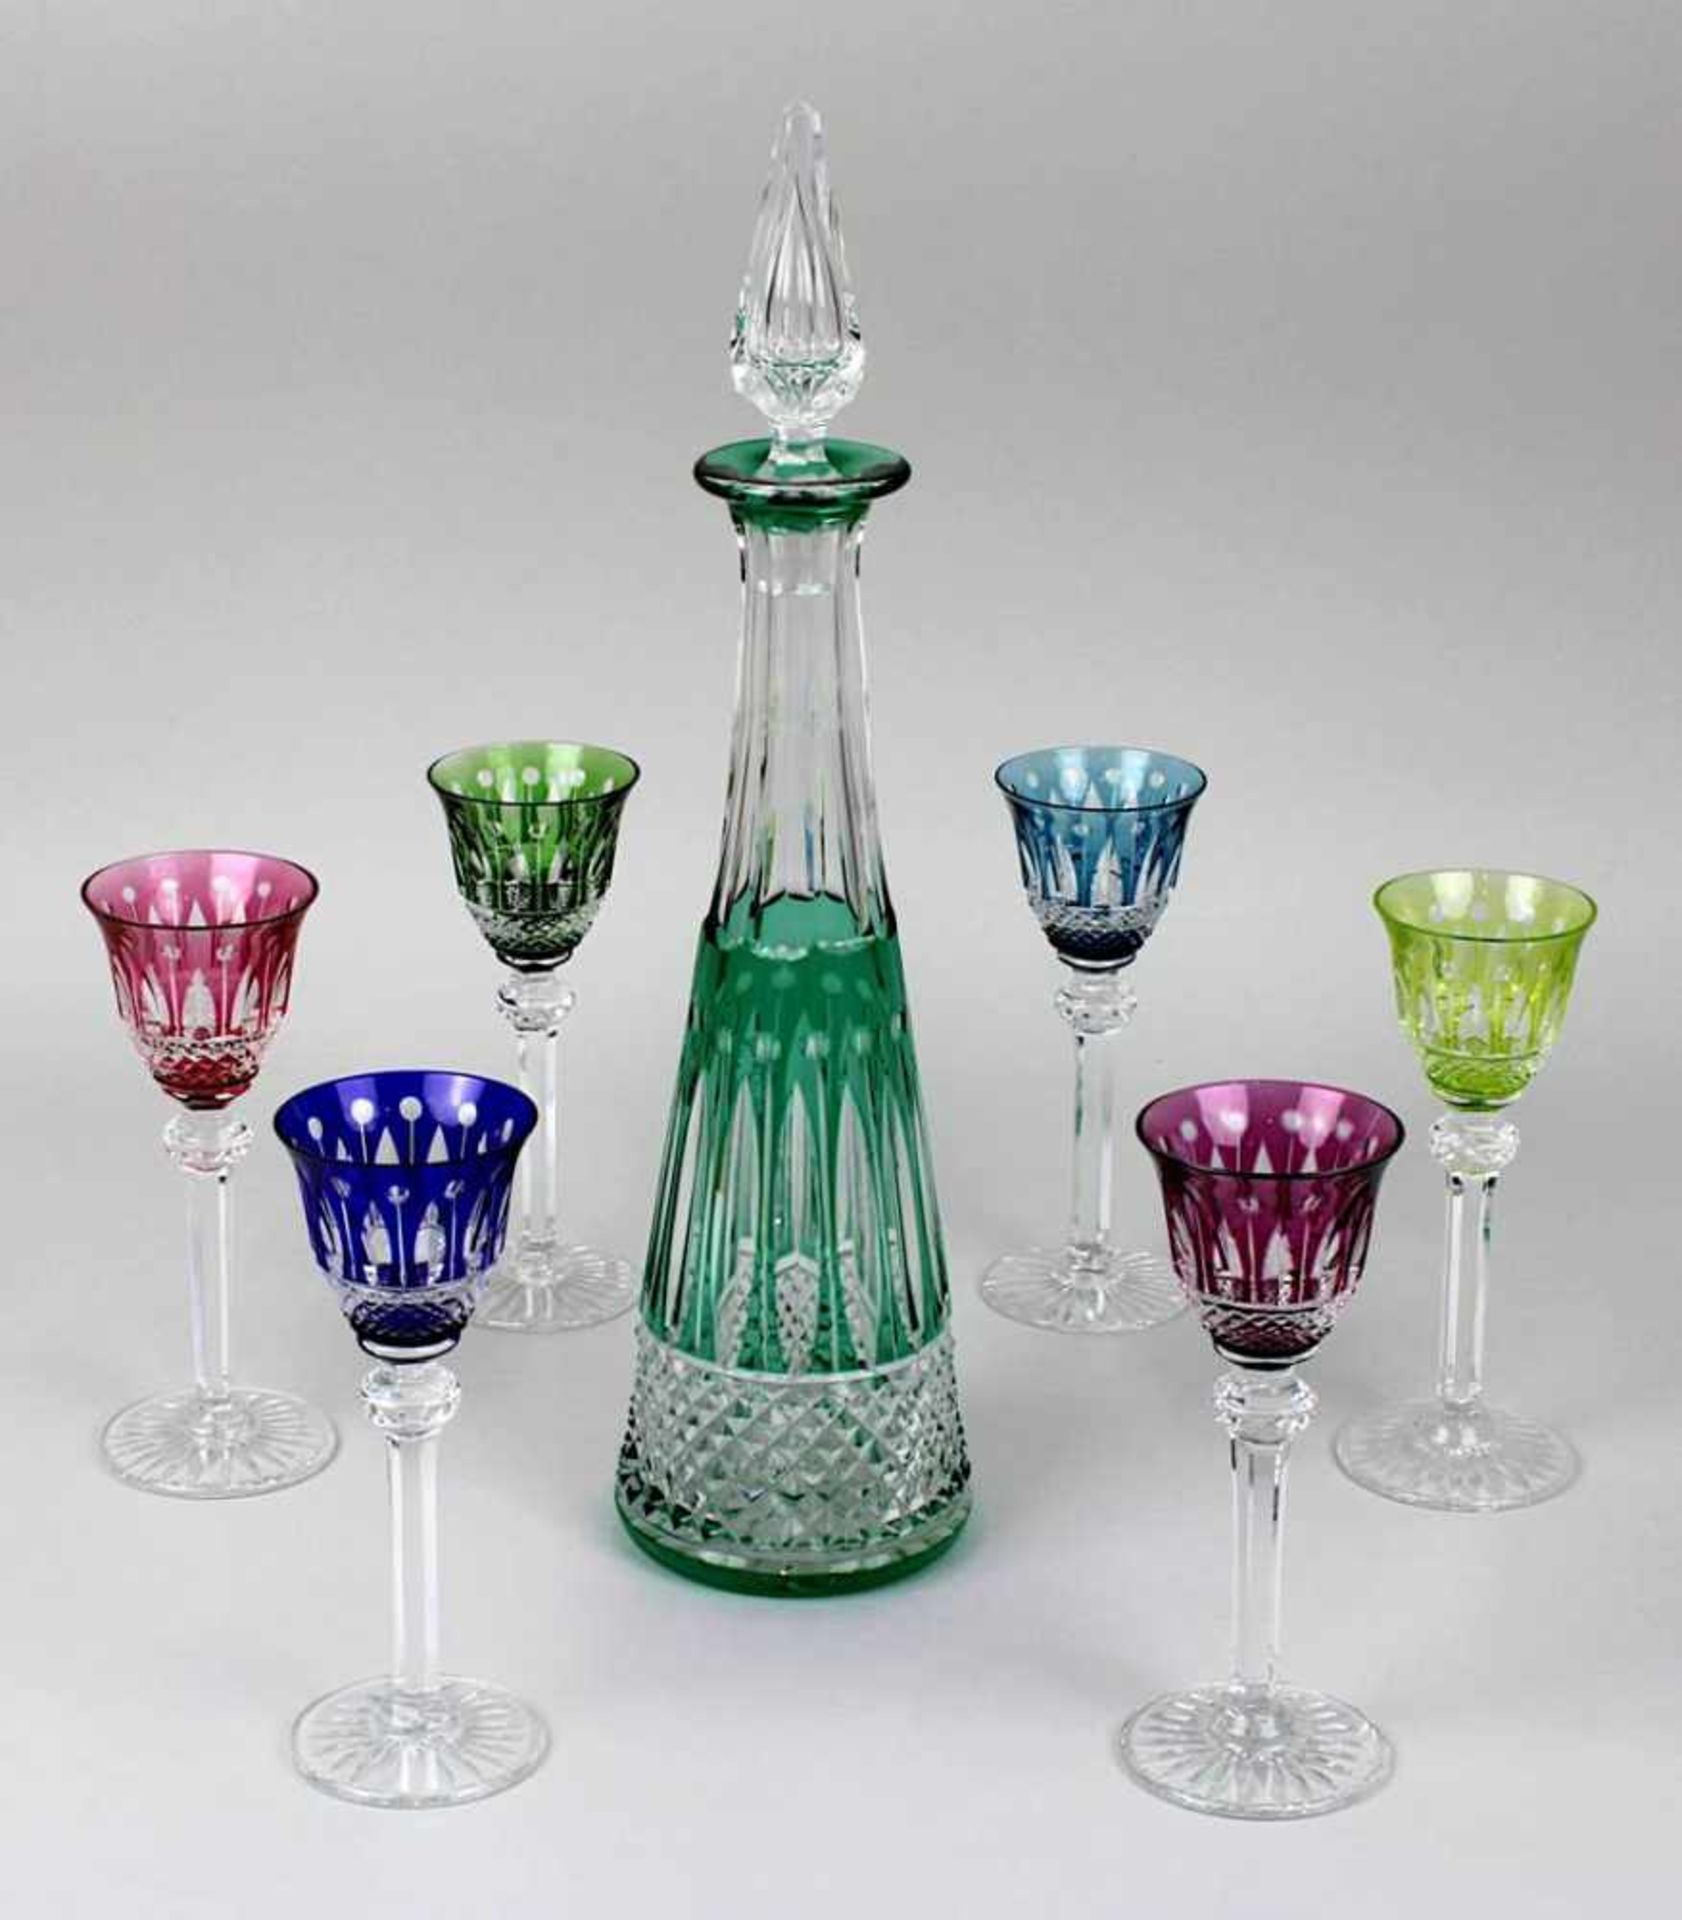 6 Likörgläser mit Karaffe, Modell Tommy, Cristalleries Saint-Louis, France, klares Kristallglas